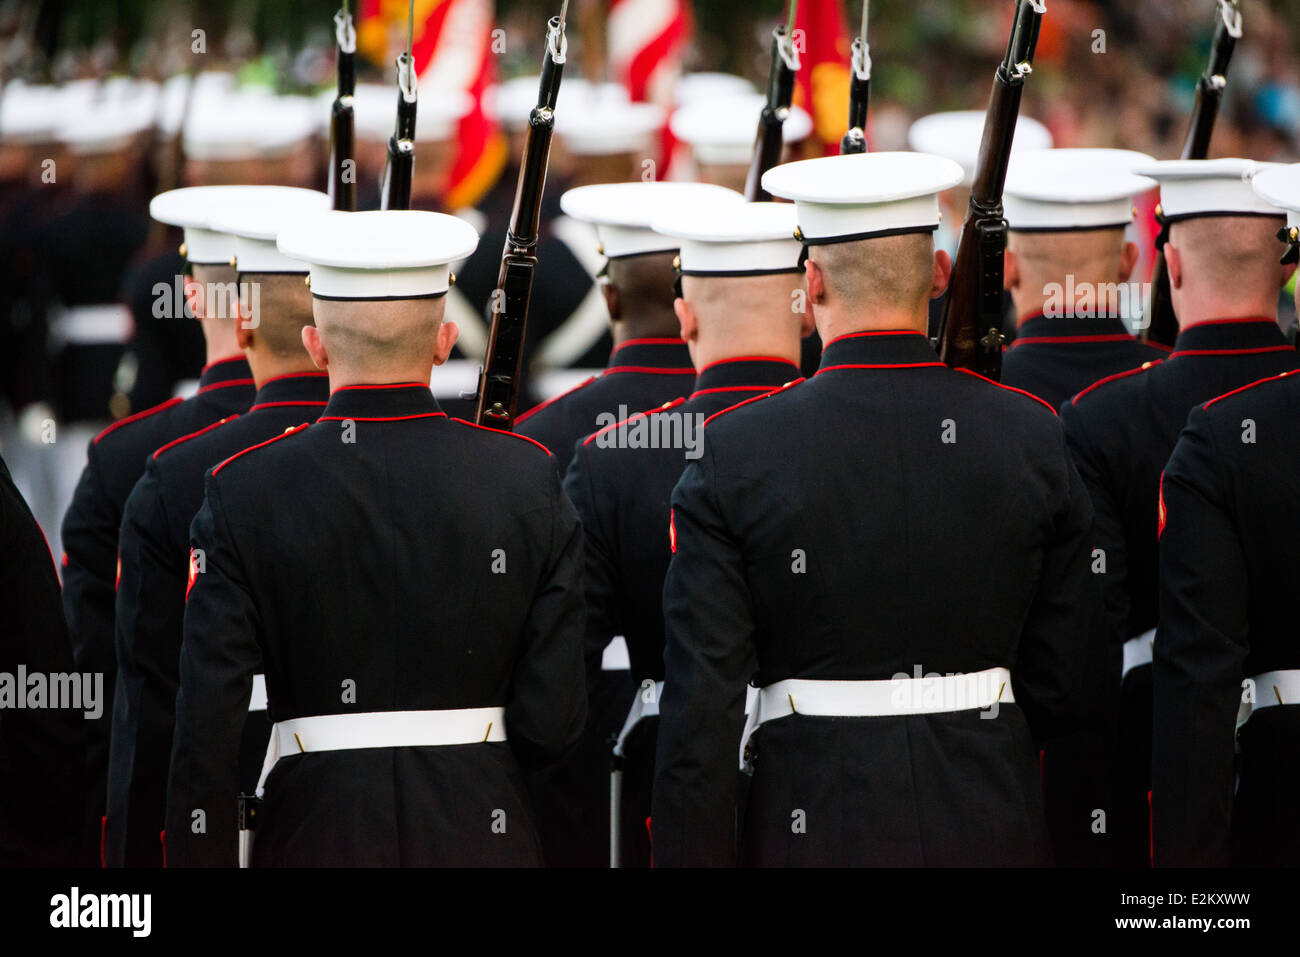 WASHINGTON DC, Estados Unidos — El equipo Silent Drill, un grupo de élite de miembros del Cuerpo de Marines de los Estados Unidos, realiza una rutina impresionante y meticulosamente coreografiada, mostrando su disciplina, precisión y calidad. Y habilidad en el Desfile de la Puesta del Sol en el Memorial Iwo Jima en Arlington, Virginia. Foto de stock